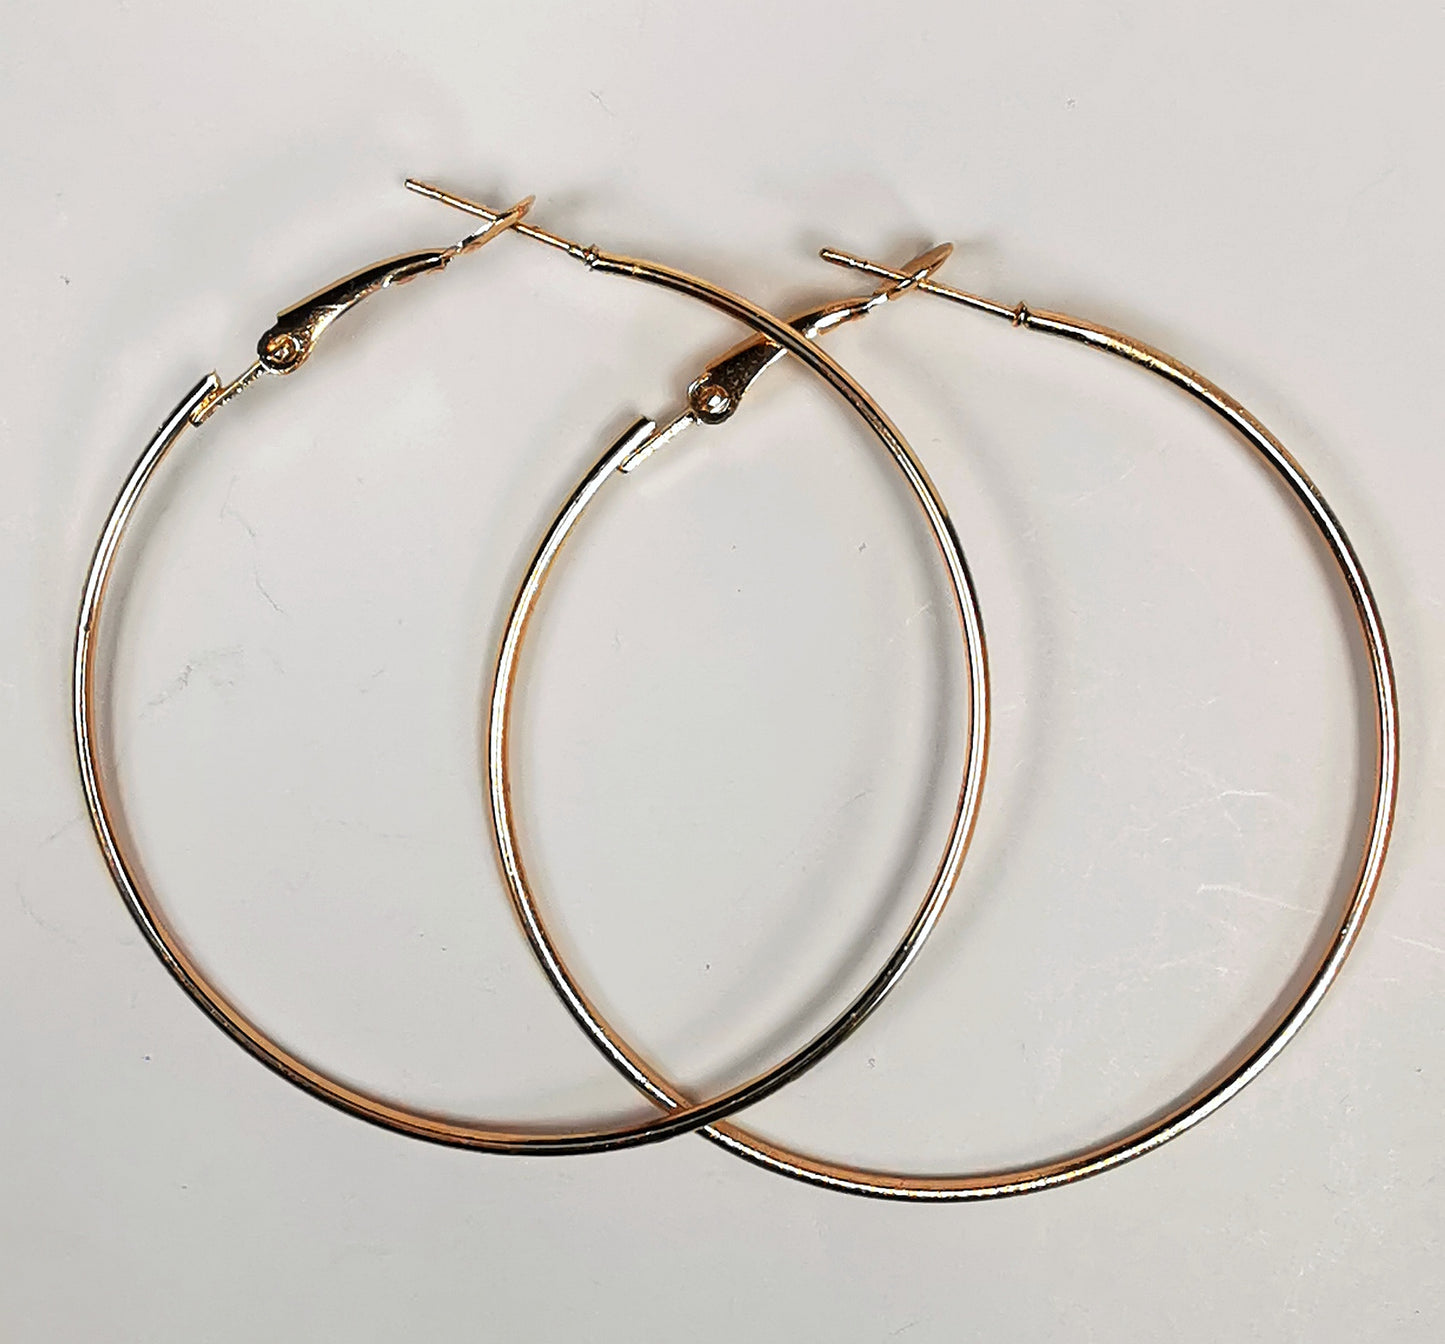 Boucles d'oreilles créoles dorées diamètre 50mm, fil 1mm, posées l'une sur l'autre sur fond blanc,. vue de dessus.